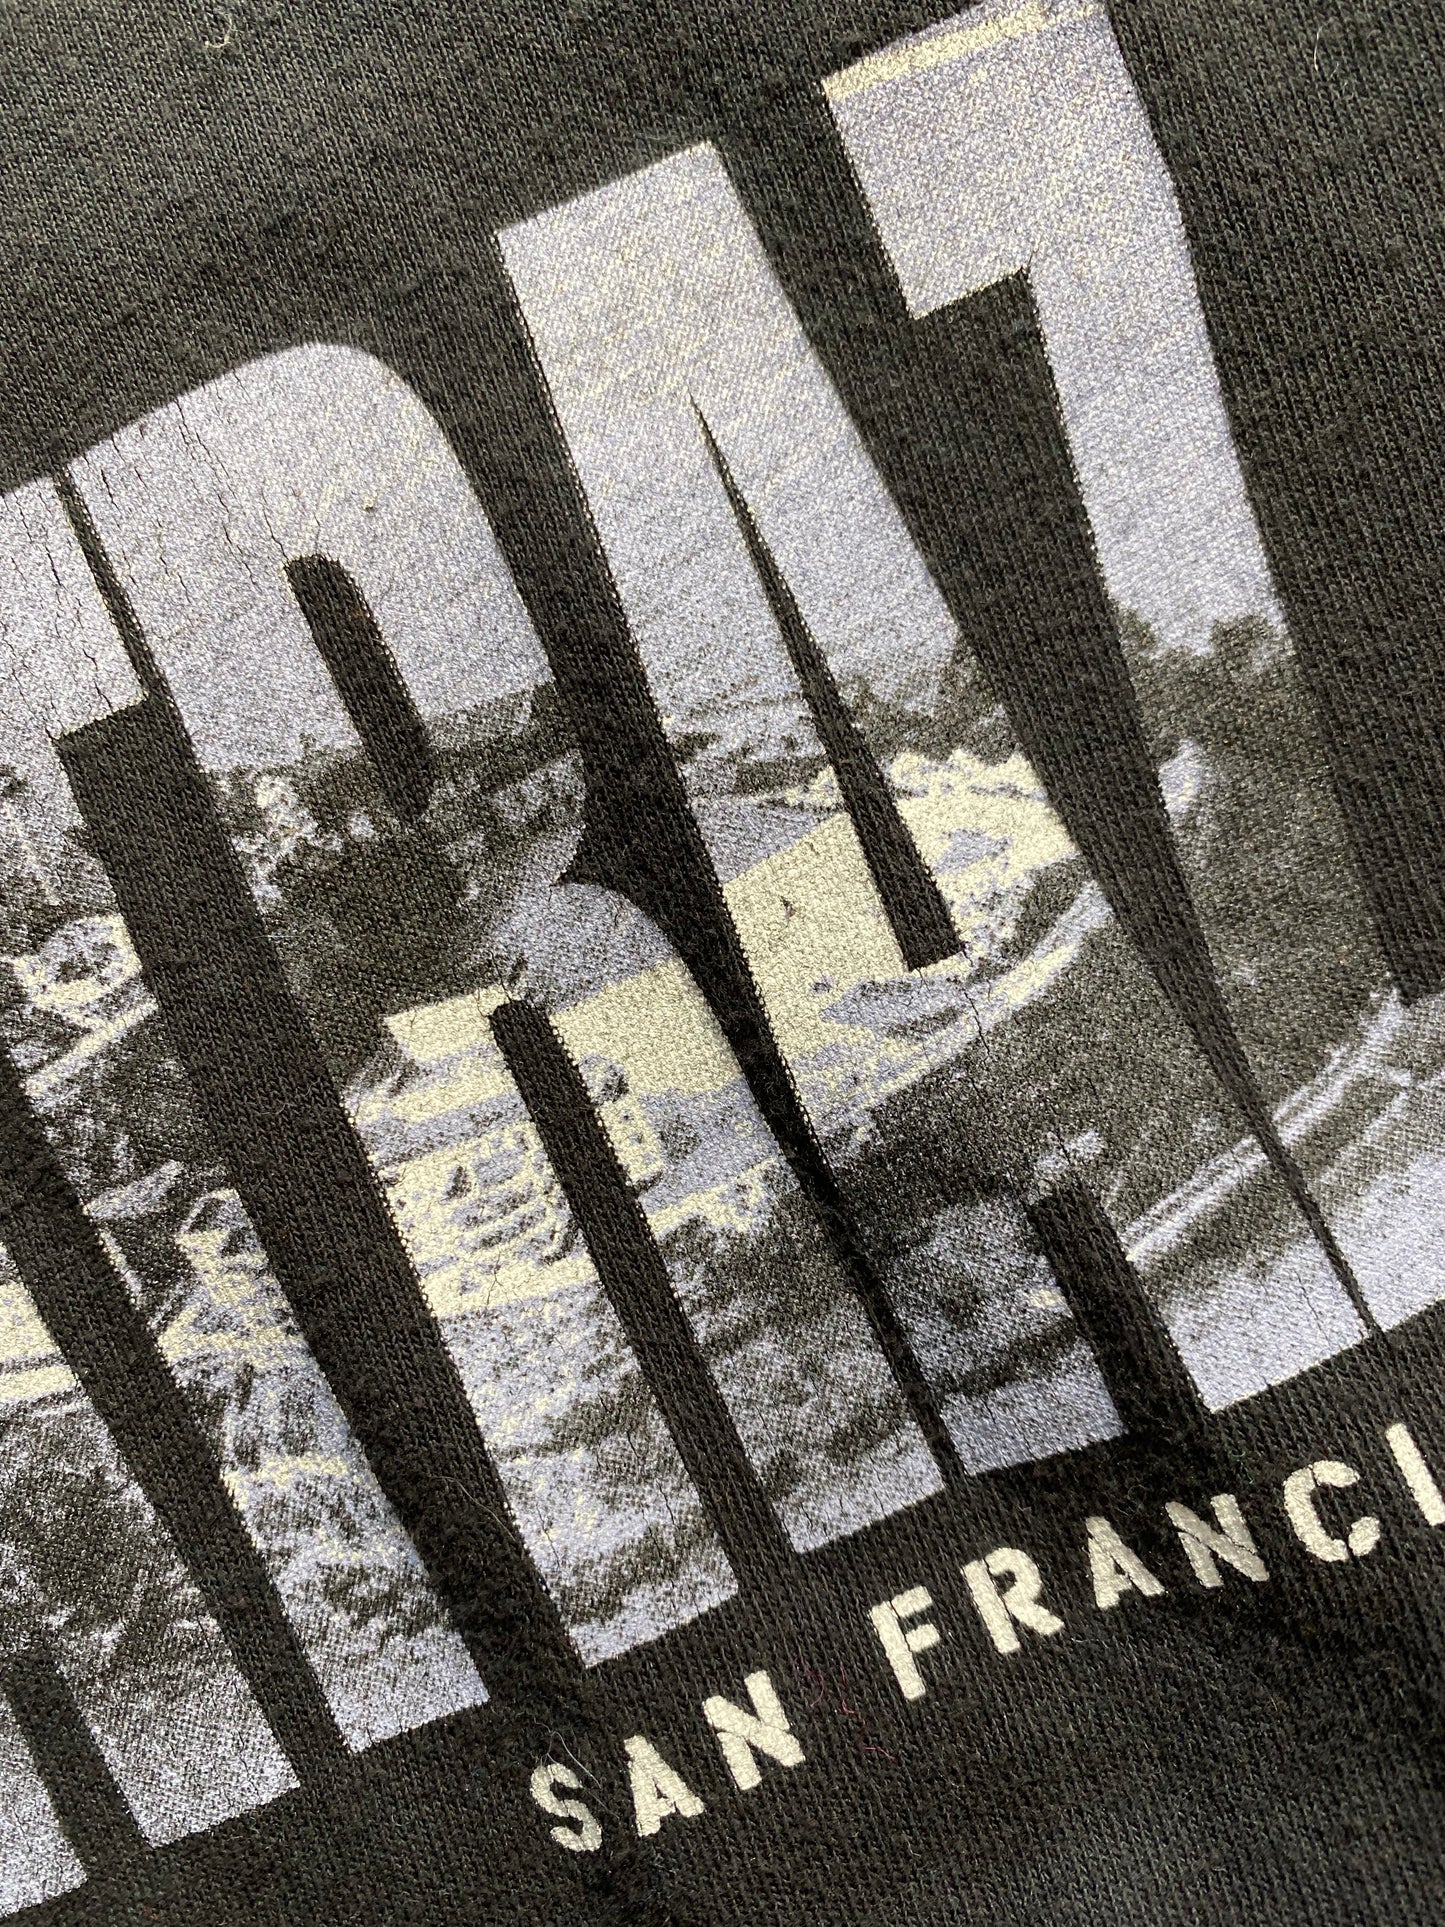 Vintage Alcatraz Prison T-Shirt THE Great Escape